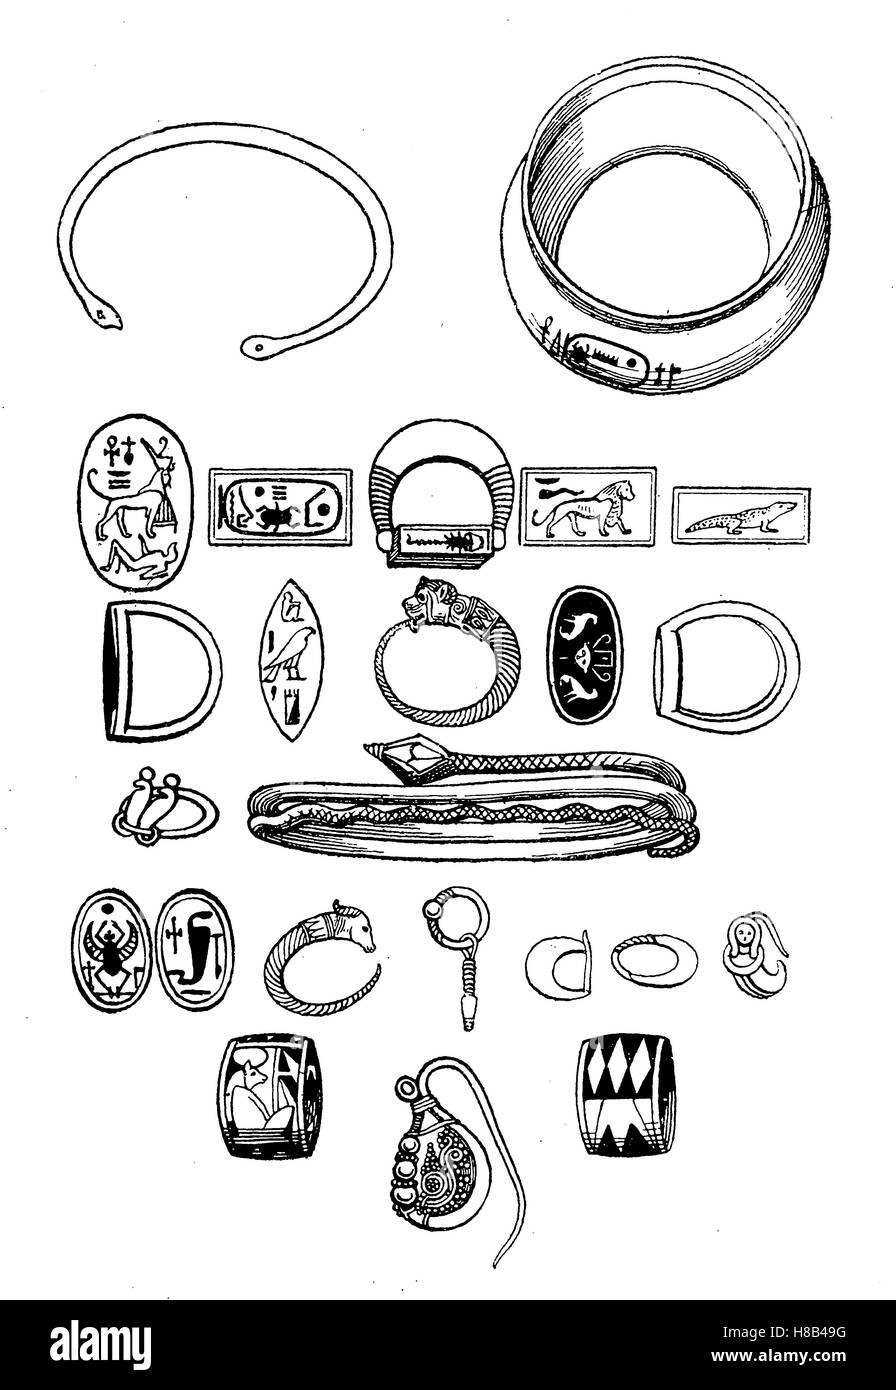 L'Egypte ancienne, bijoux, bracelets, bagues, boucles d'oreilles, 18e dynastie, histoire de la mode, des costumes story Banque D'Images